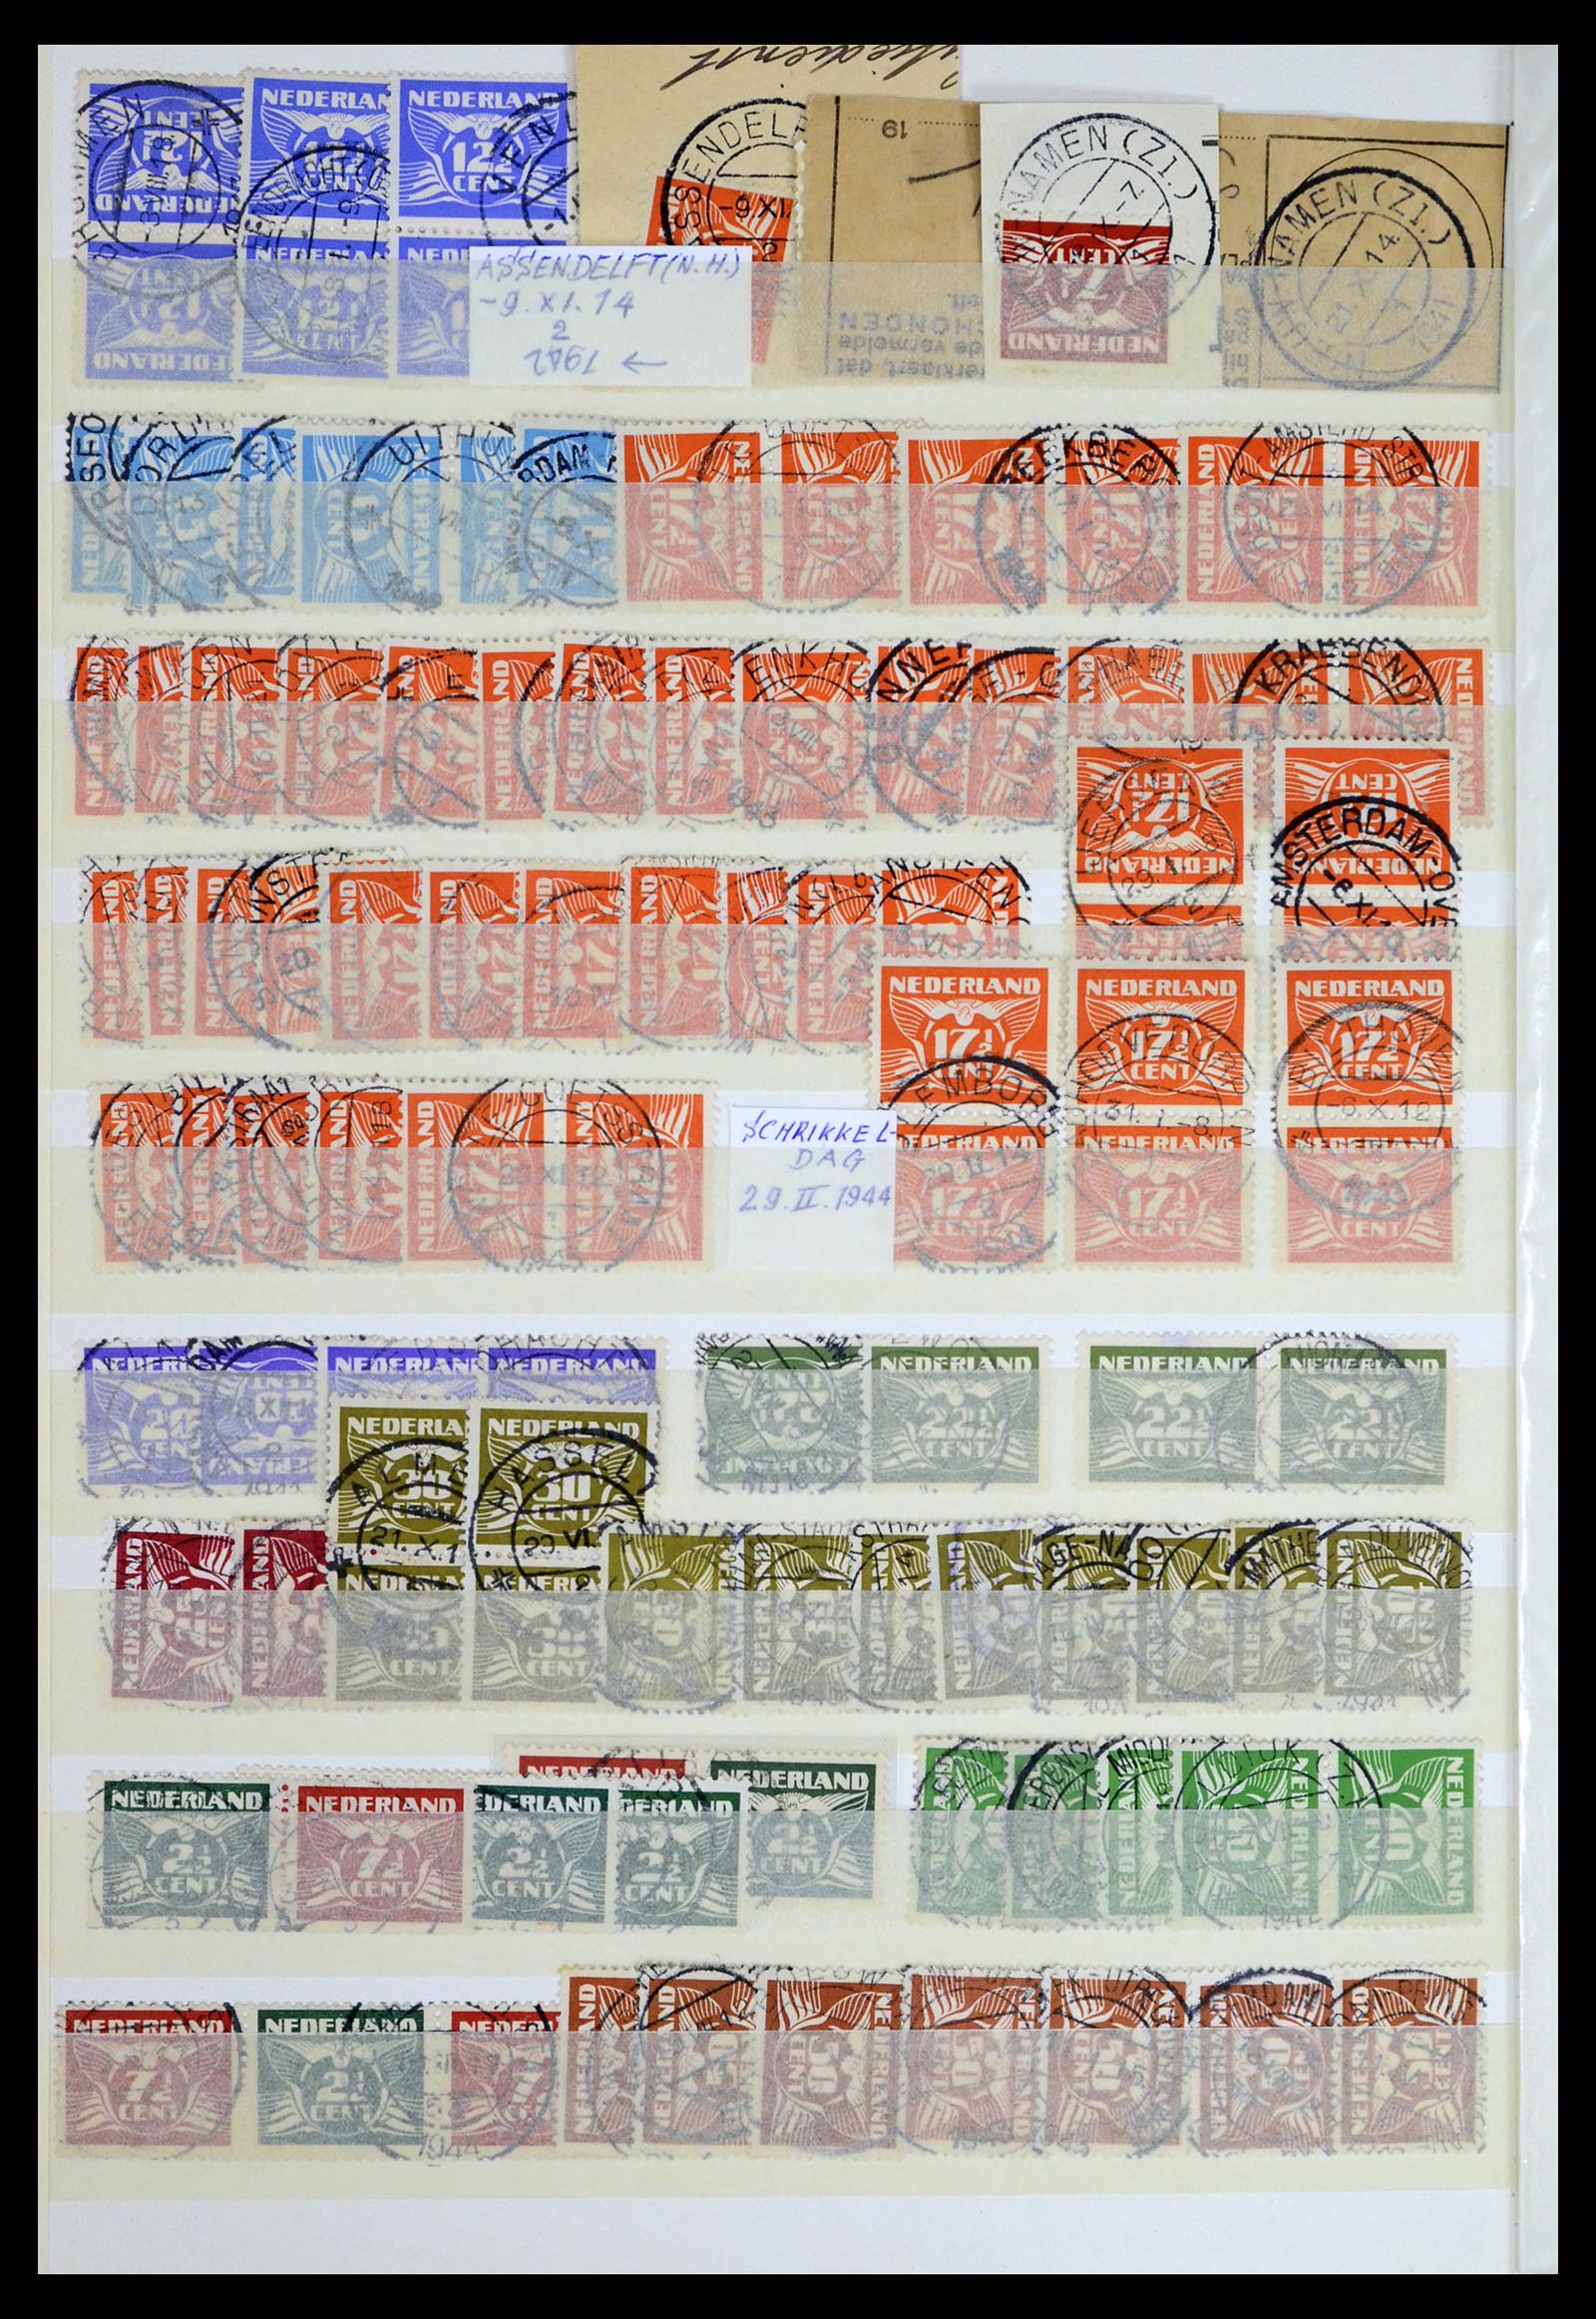 37424 032 - Postzegelverzameling 37424 Nederland kortebalk stempels.